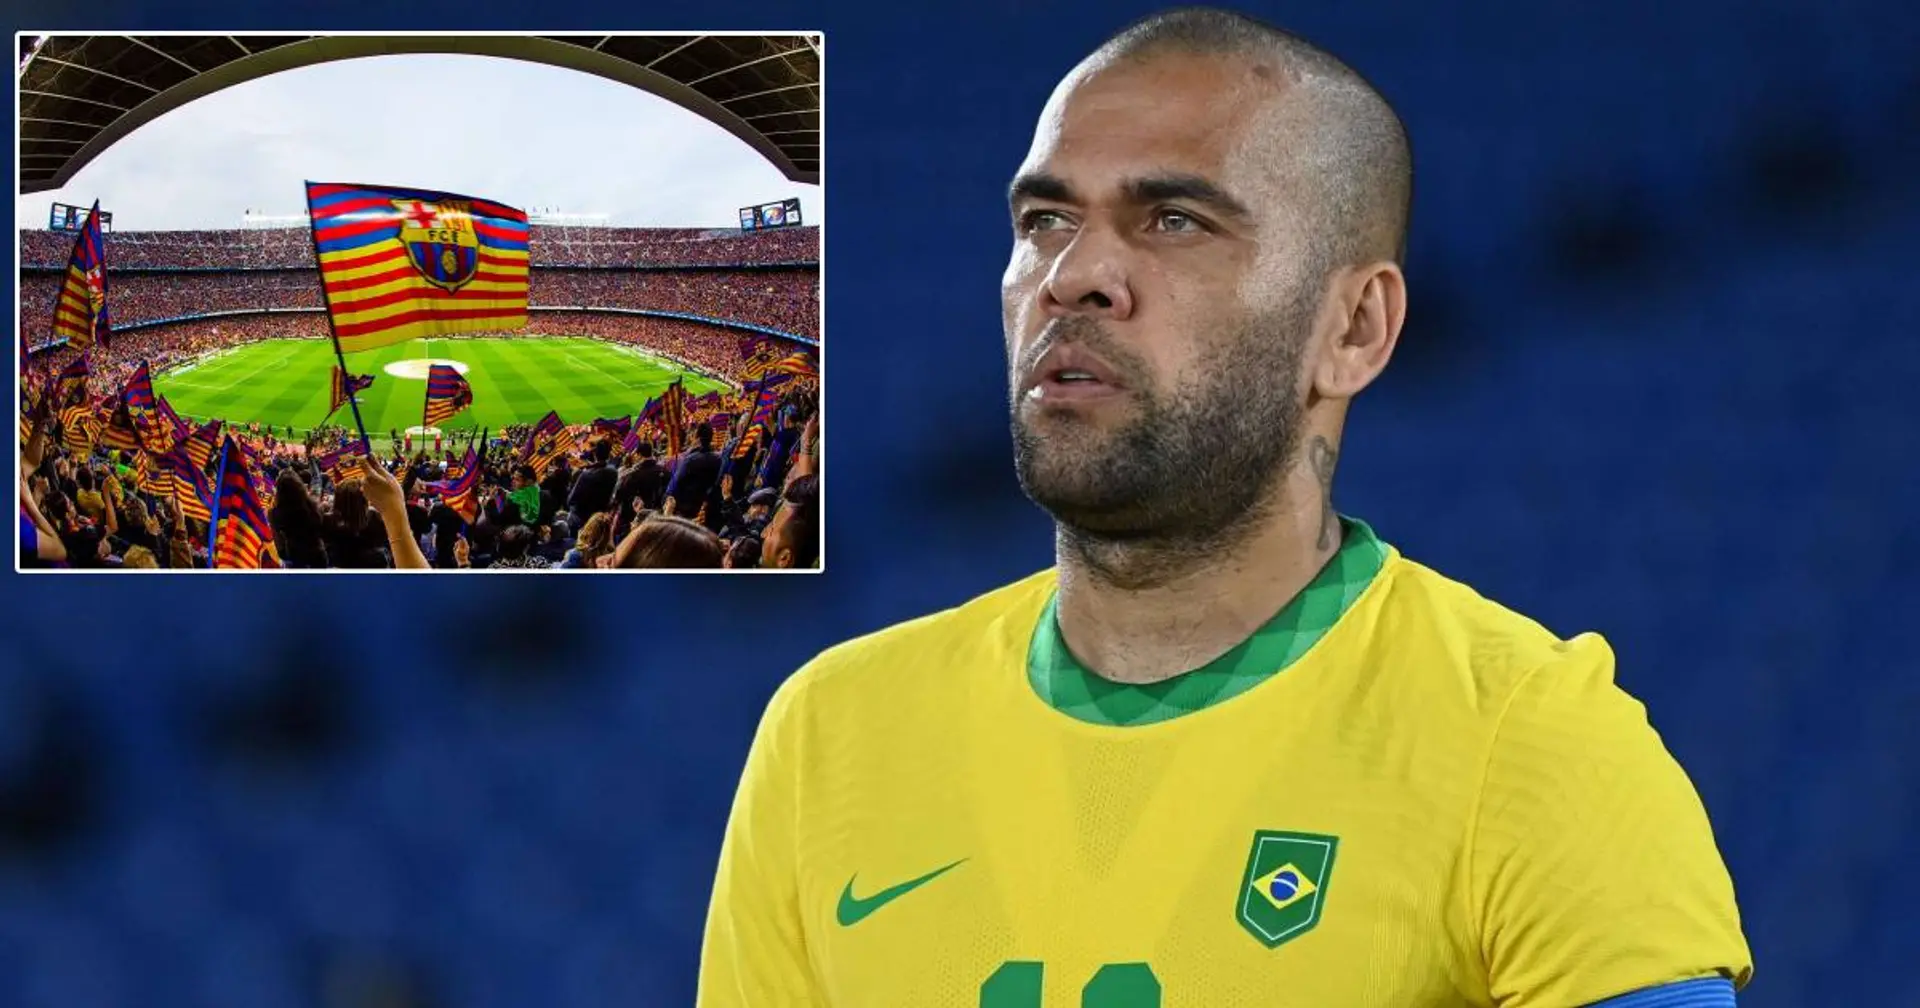 Der 38-jährige Dani Alves hat sich bei Barca angeboten - und wie reagierten die Katalanen?